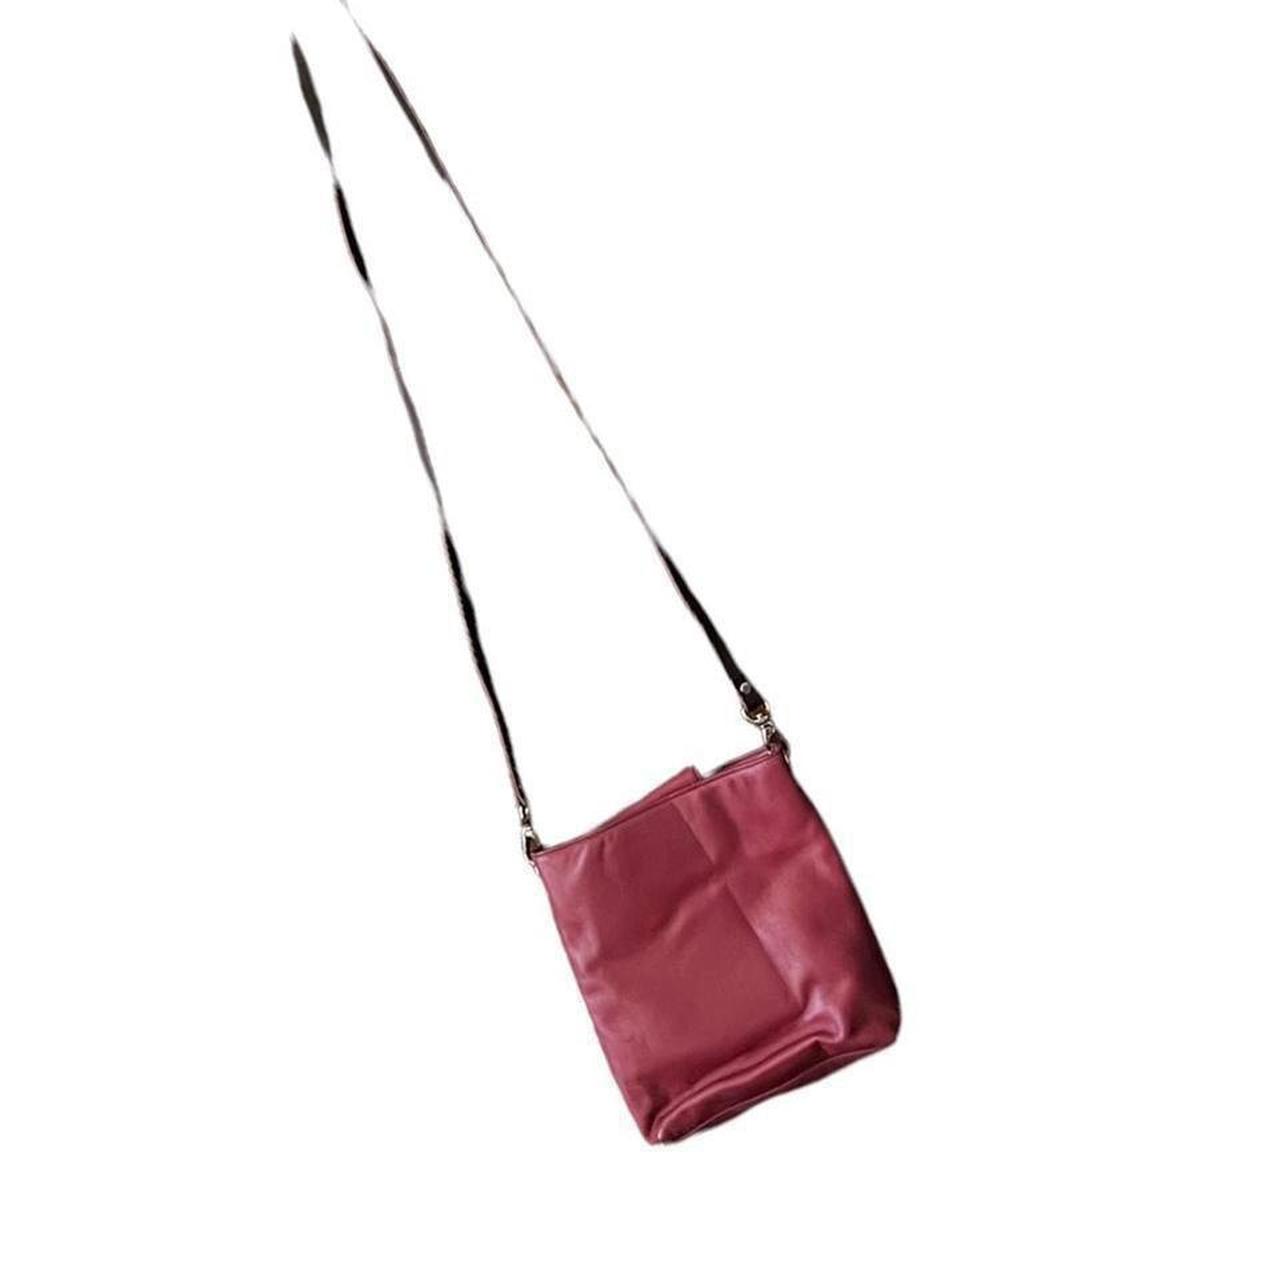 The vintage Lauren Ralph Lauren tote bag is an - Depop